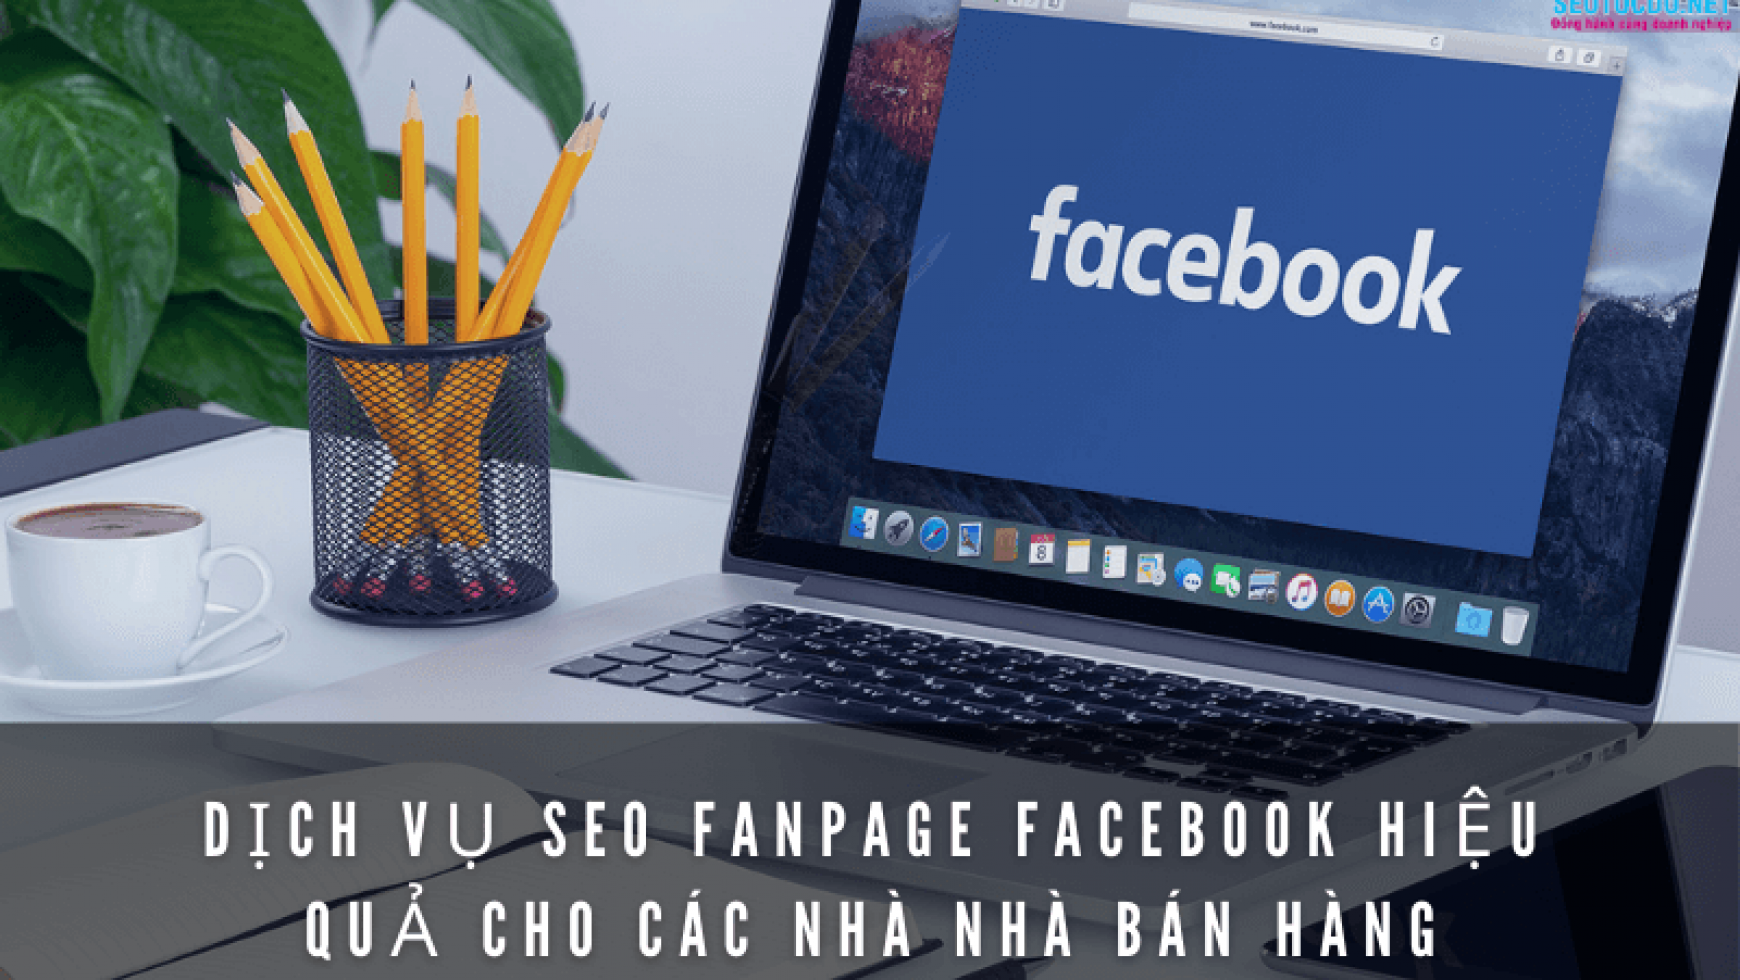 Dịch vụ seo fanpage facebook hiệu quả cho các nhà bán hàng